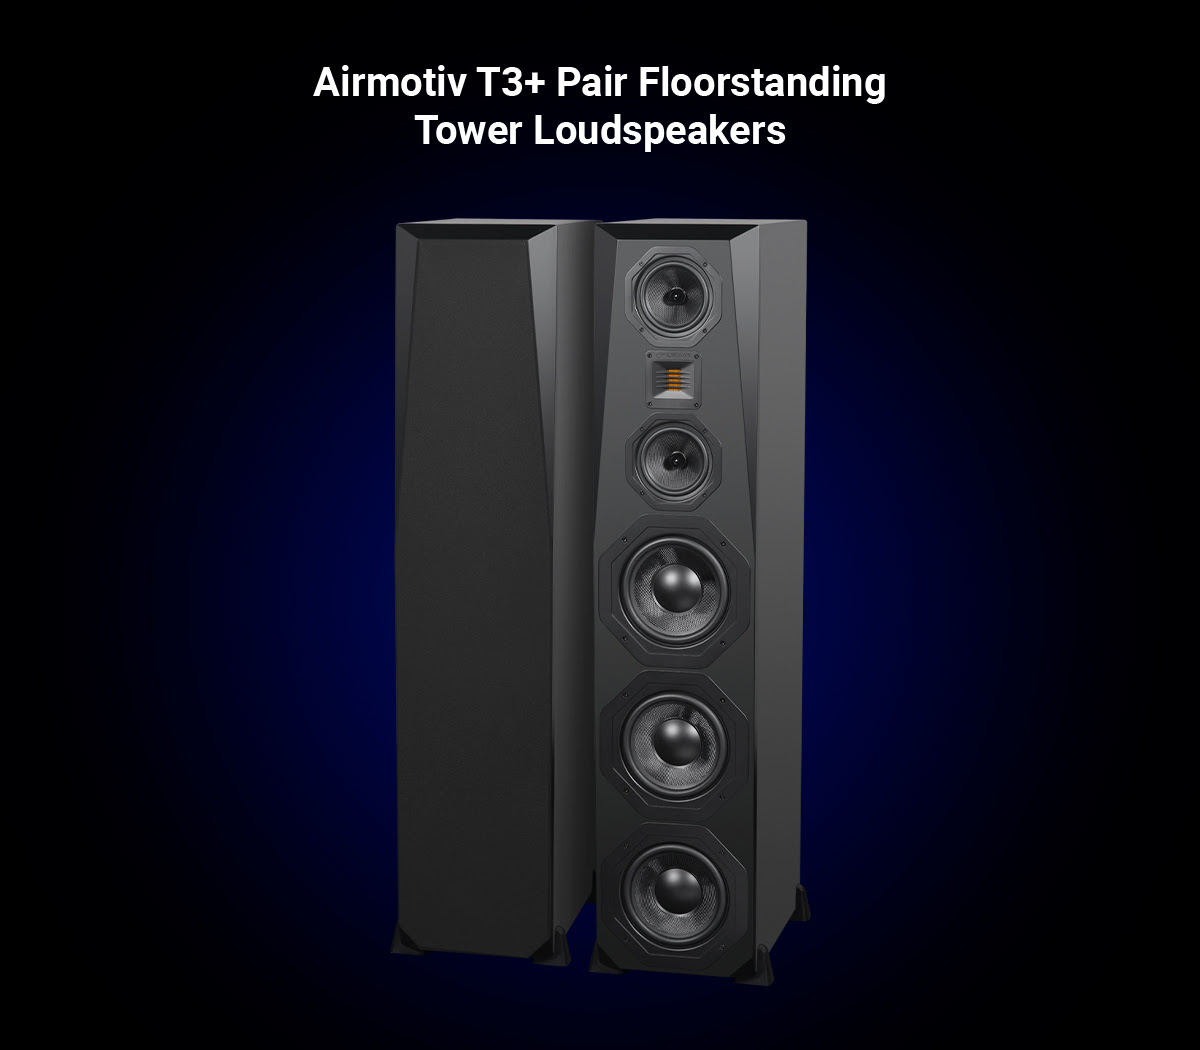 Airmotiv T3+ Pair Floorstanding Tower Loudspeakers
     